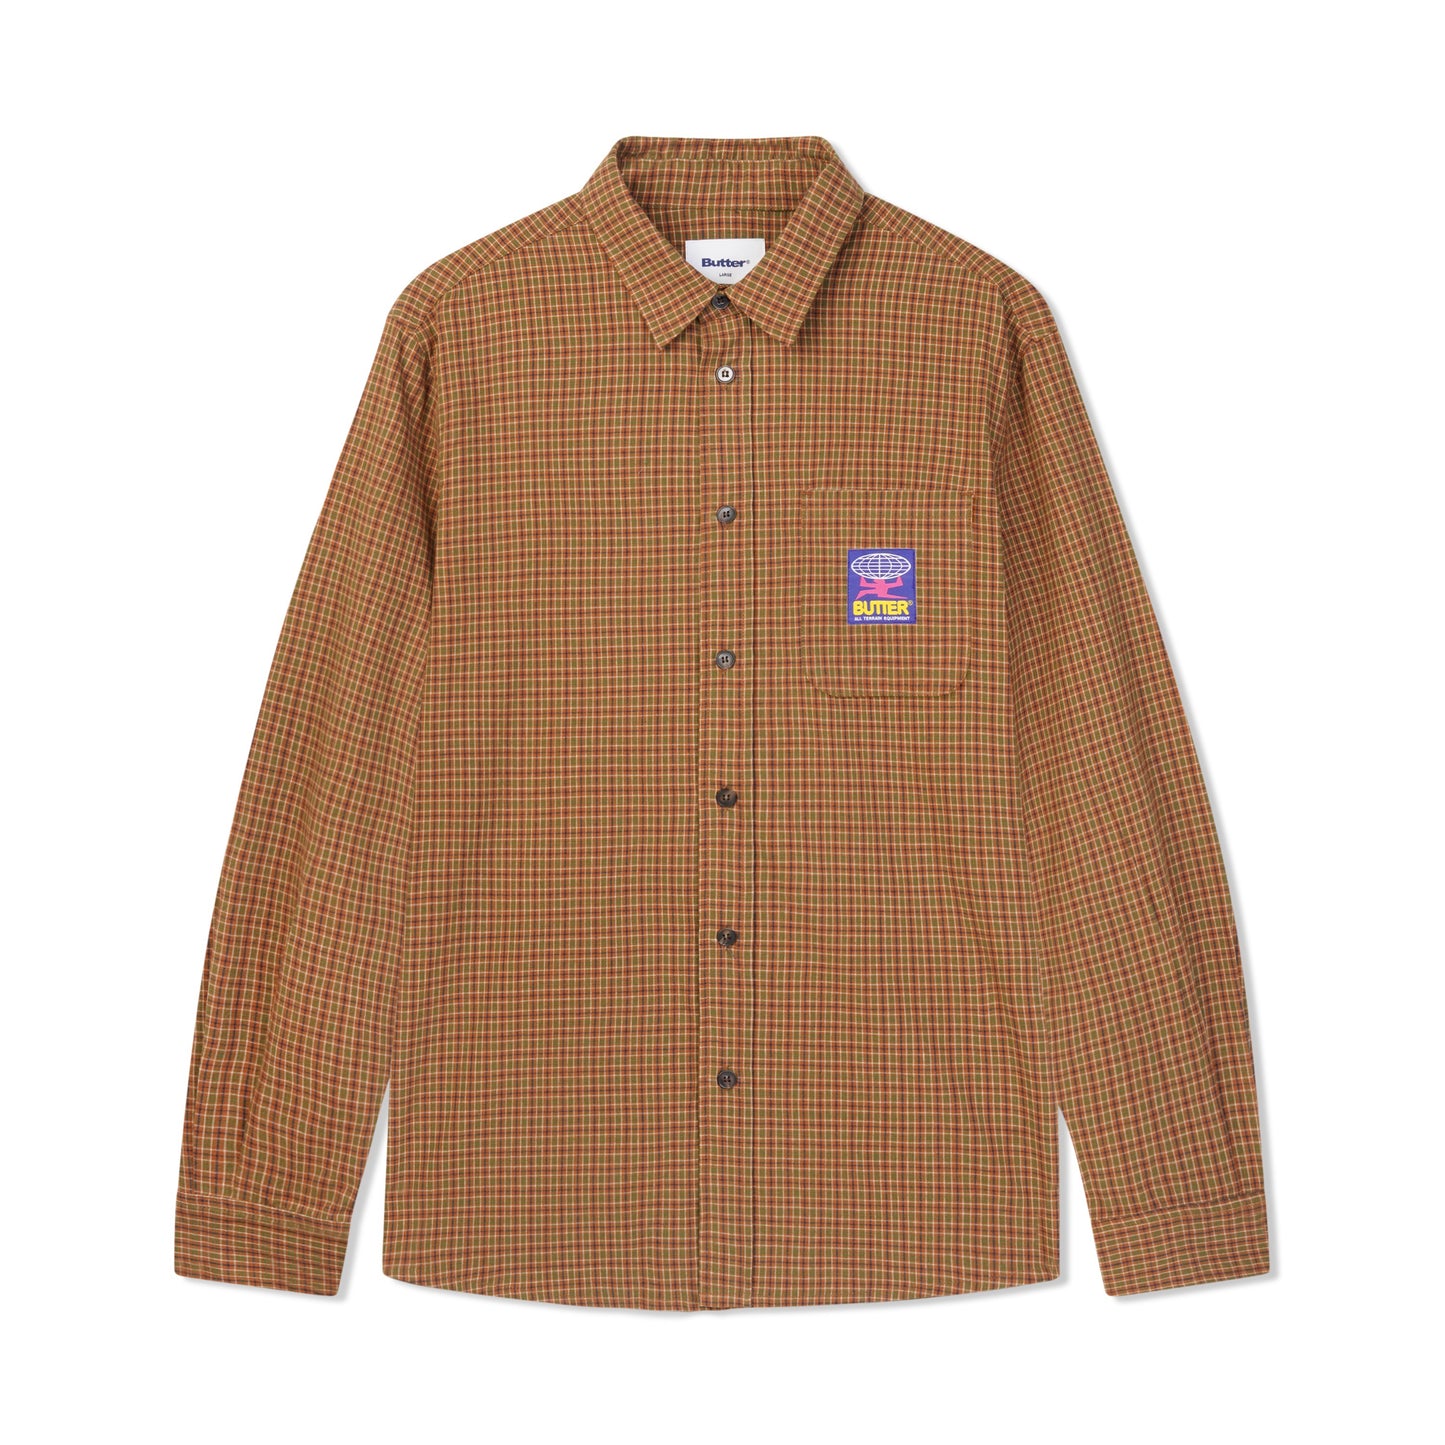 Terrain L/S Shirt - Brown/Green